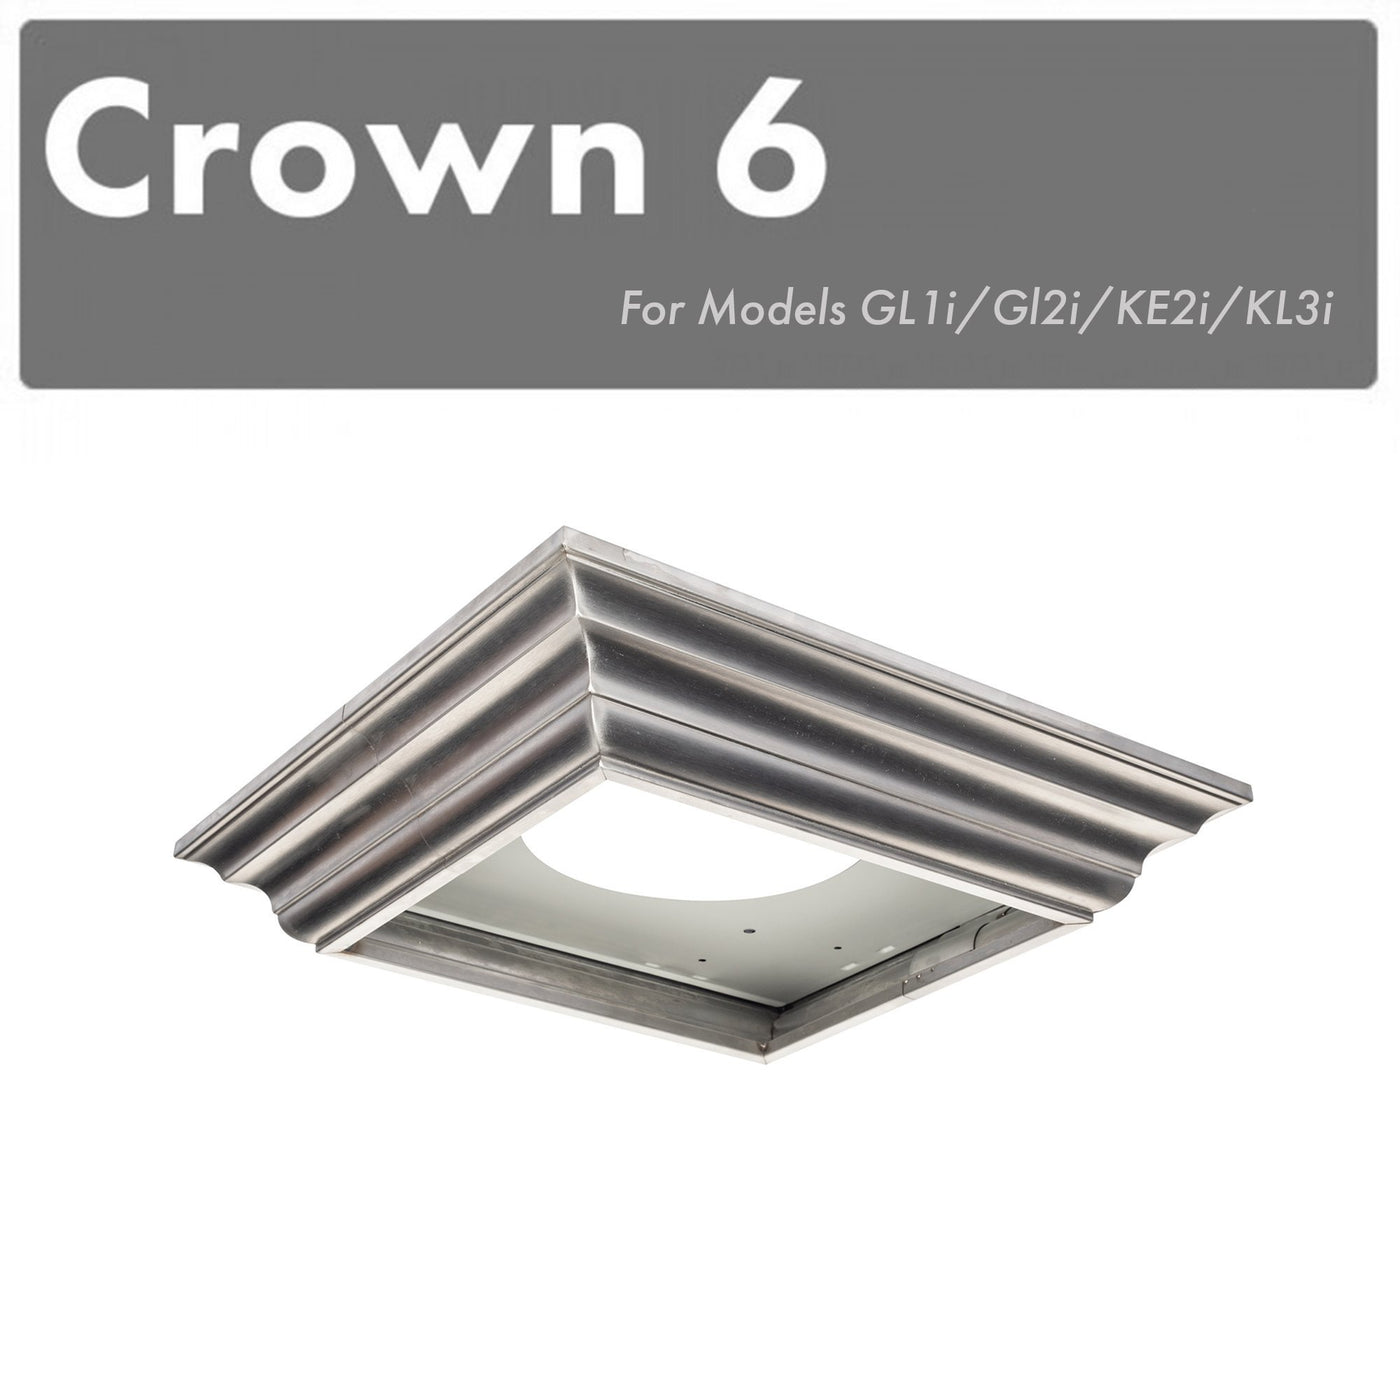 ZLINE Crown Molding Profile 6 for Wall Mount Range Hoods (CM6-GL1i/GL2i/KE2i/KL3i)